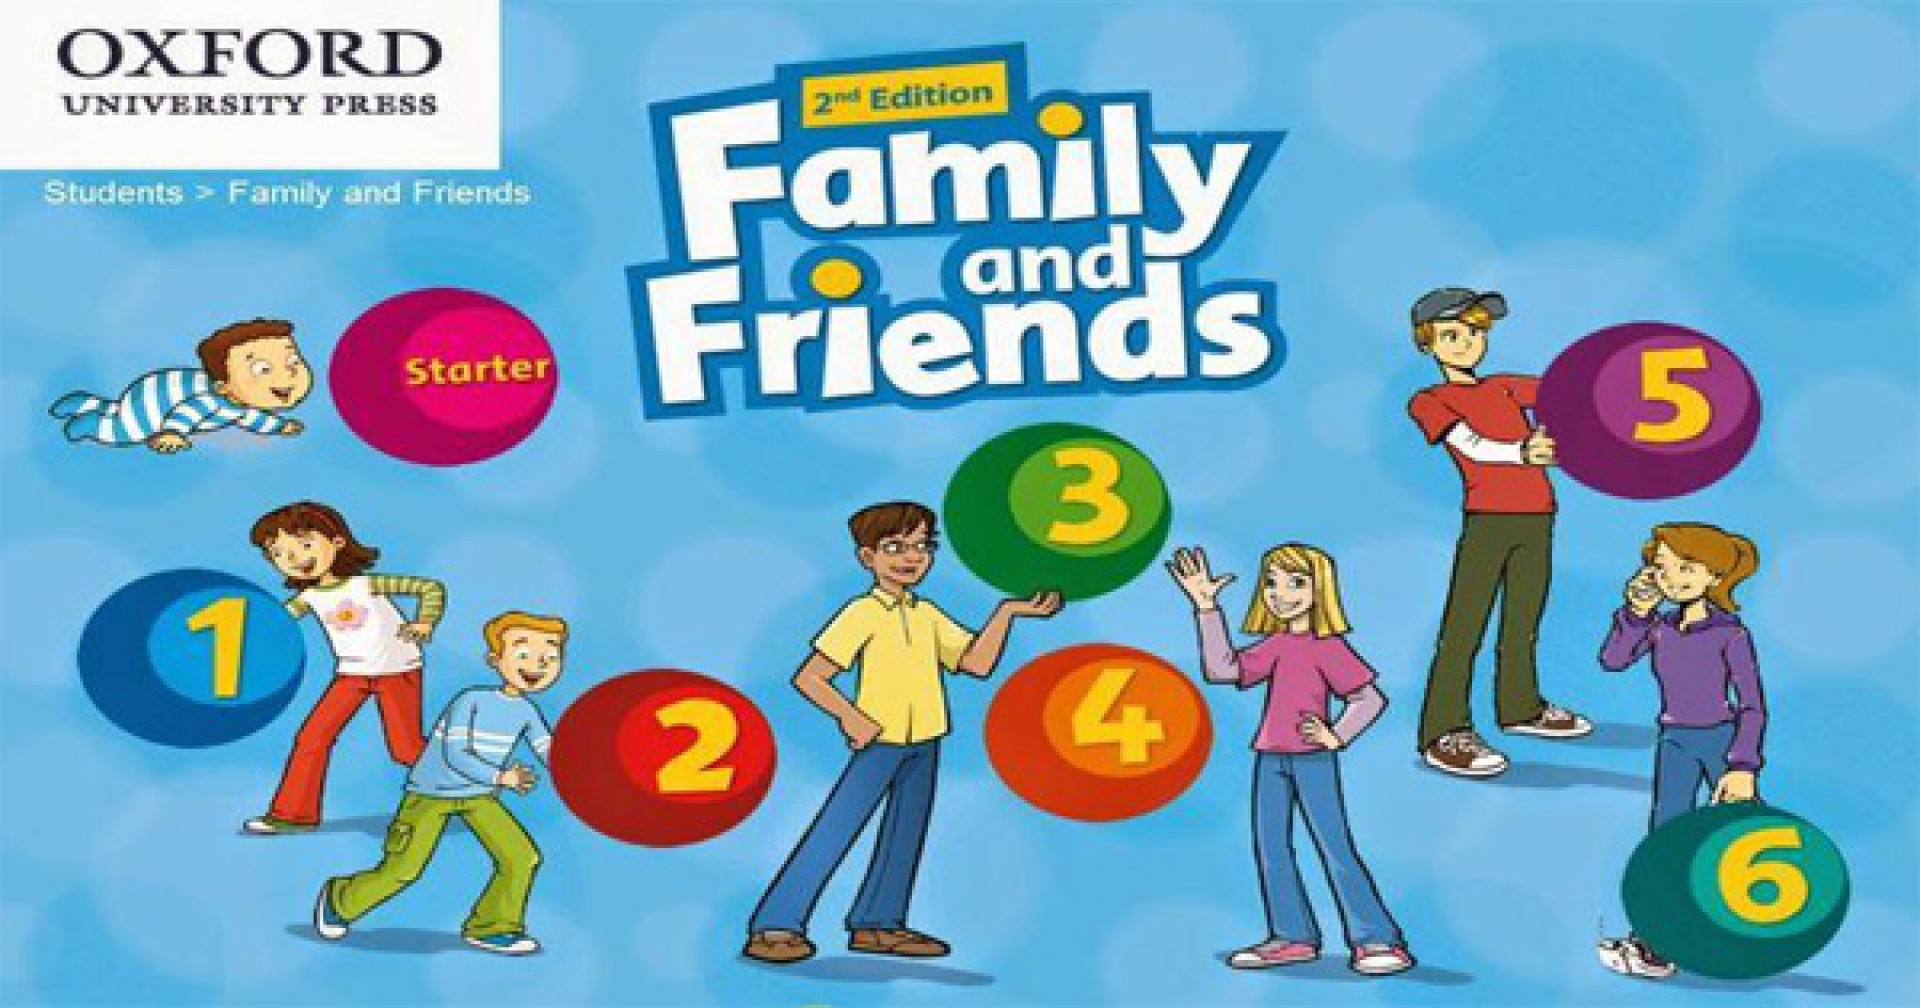 Family&Friends: bộ giáo trình tiếng Anh cho trẻ em siêu đầy màu sắc và vui nhộn